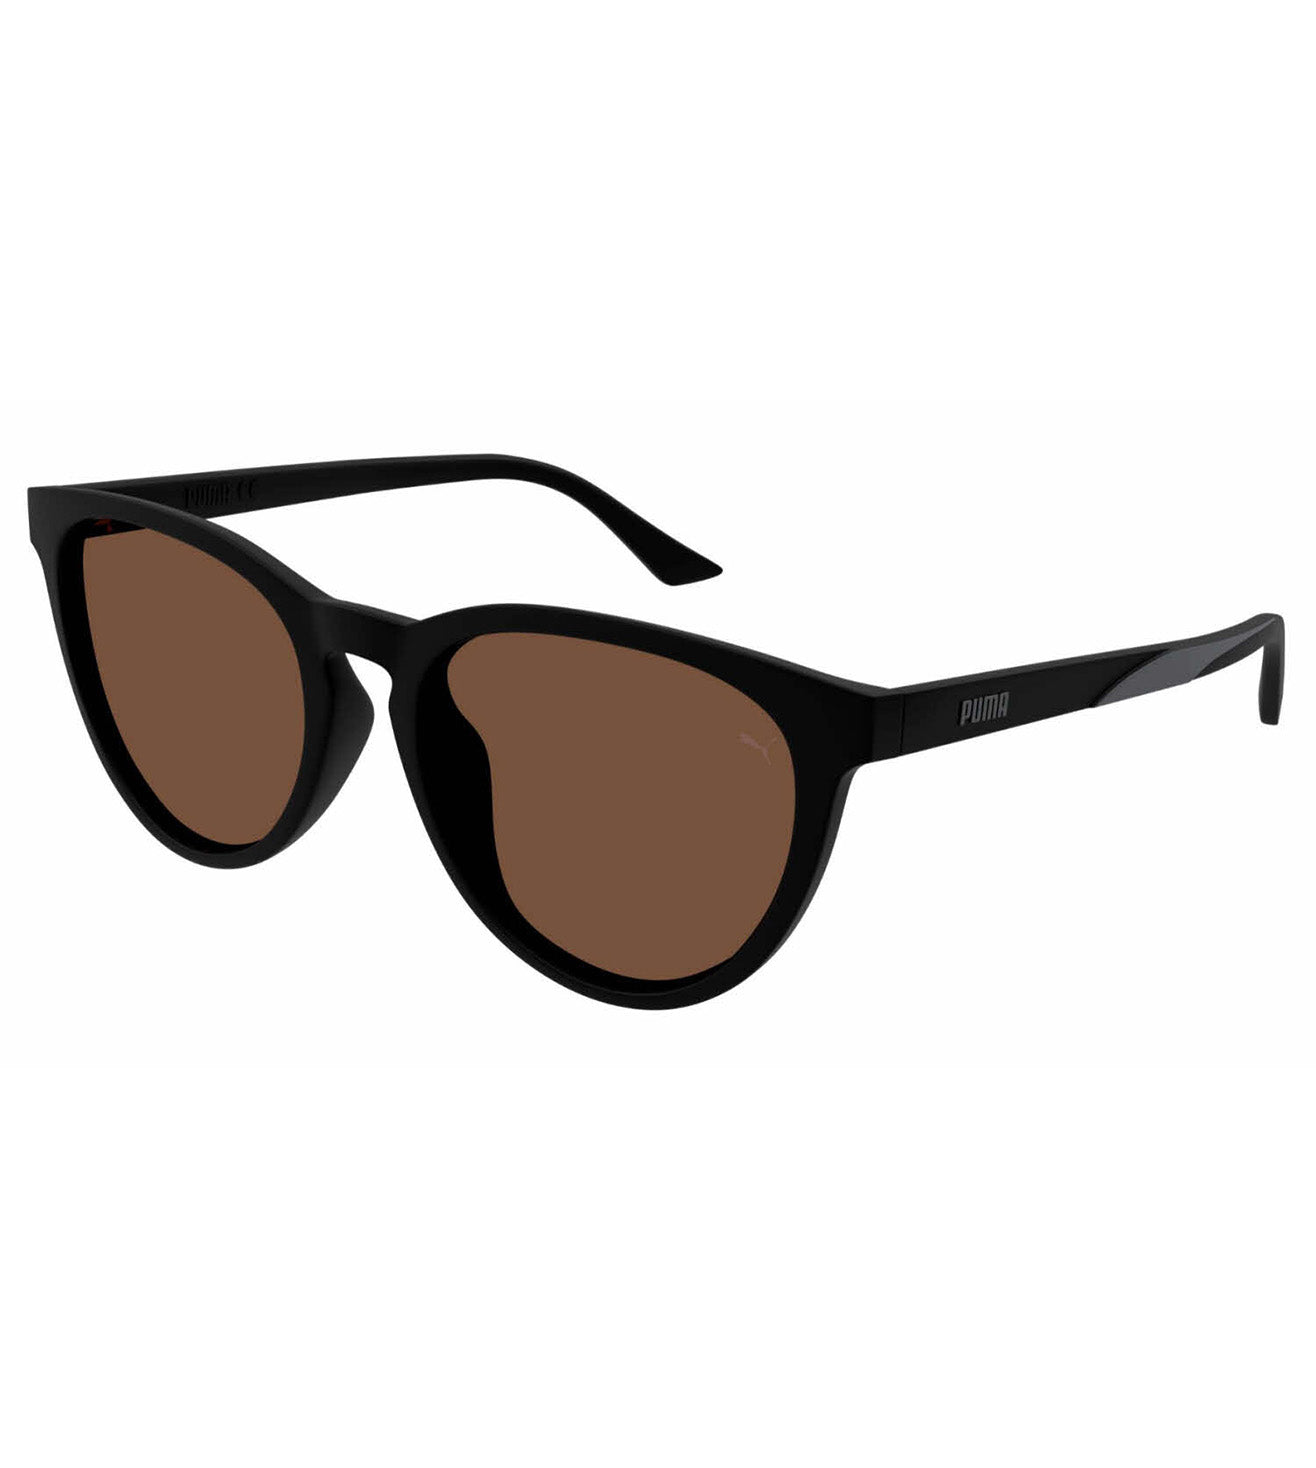 Puma Unisex Brown Round Sunglasses